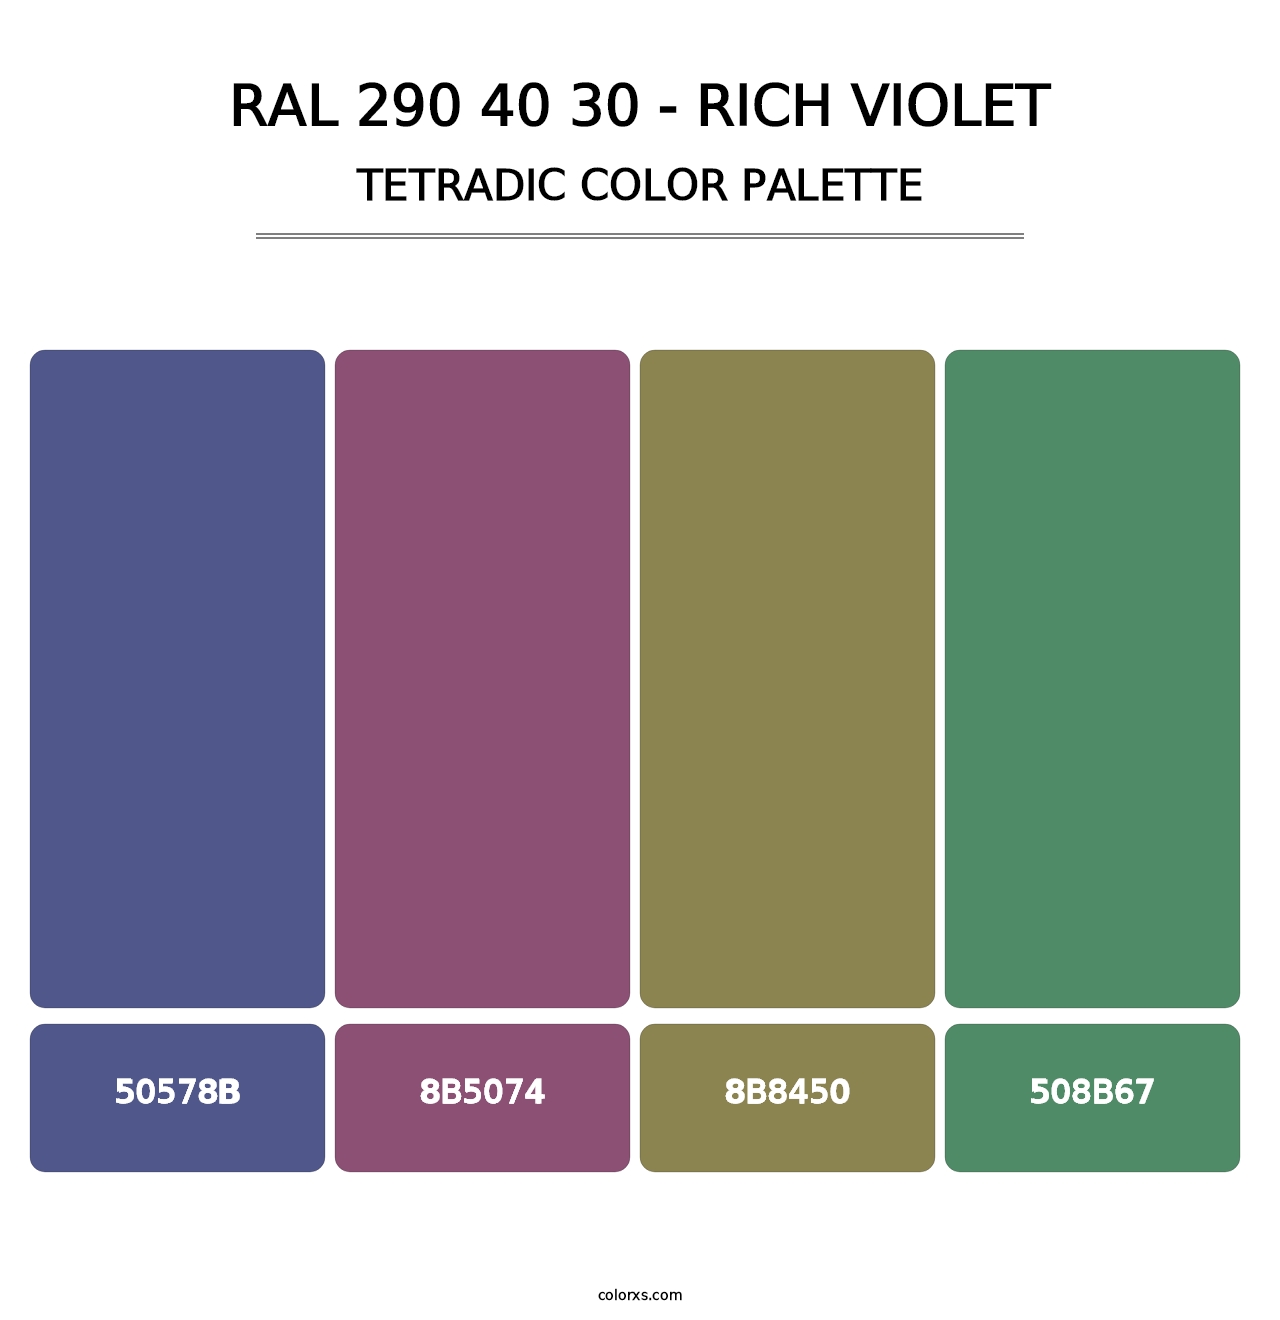 RAL 290 40 30 - Rich Violet - Tetradic Color Palette